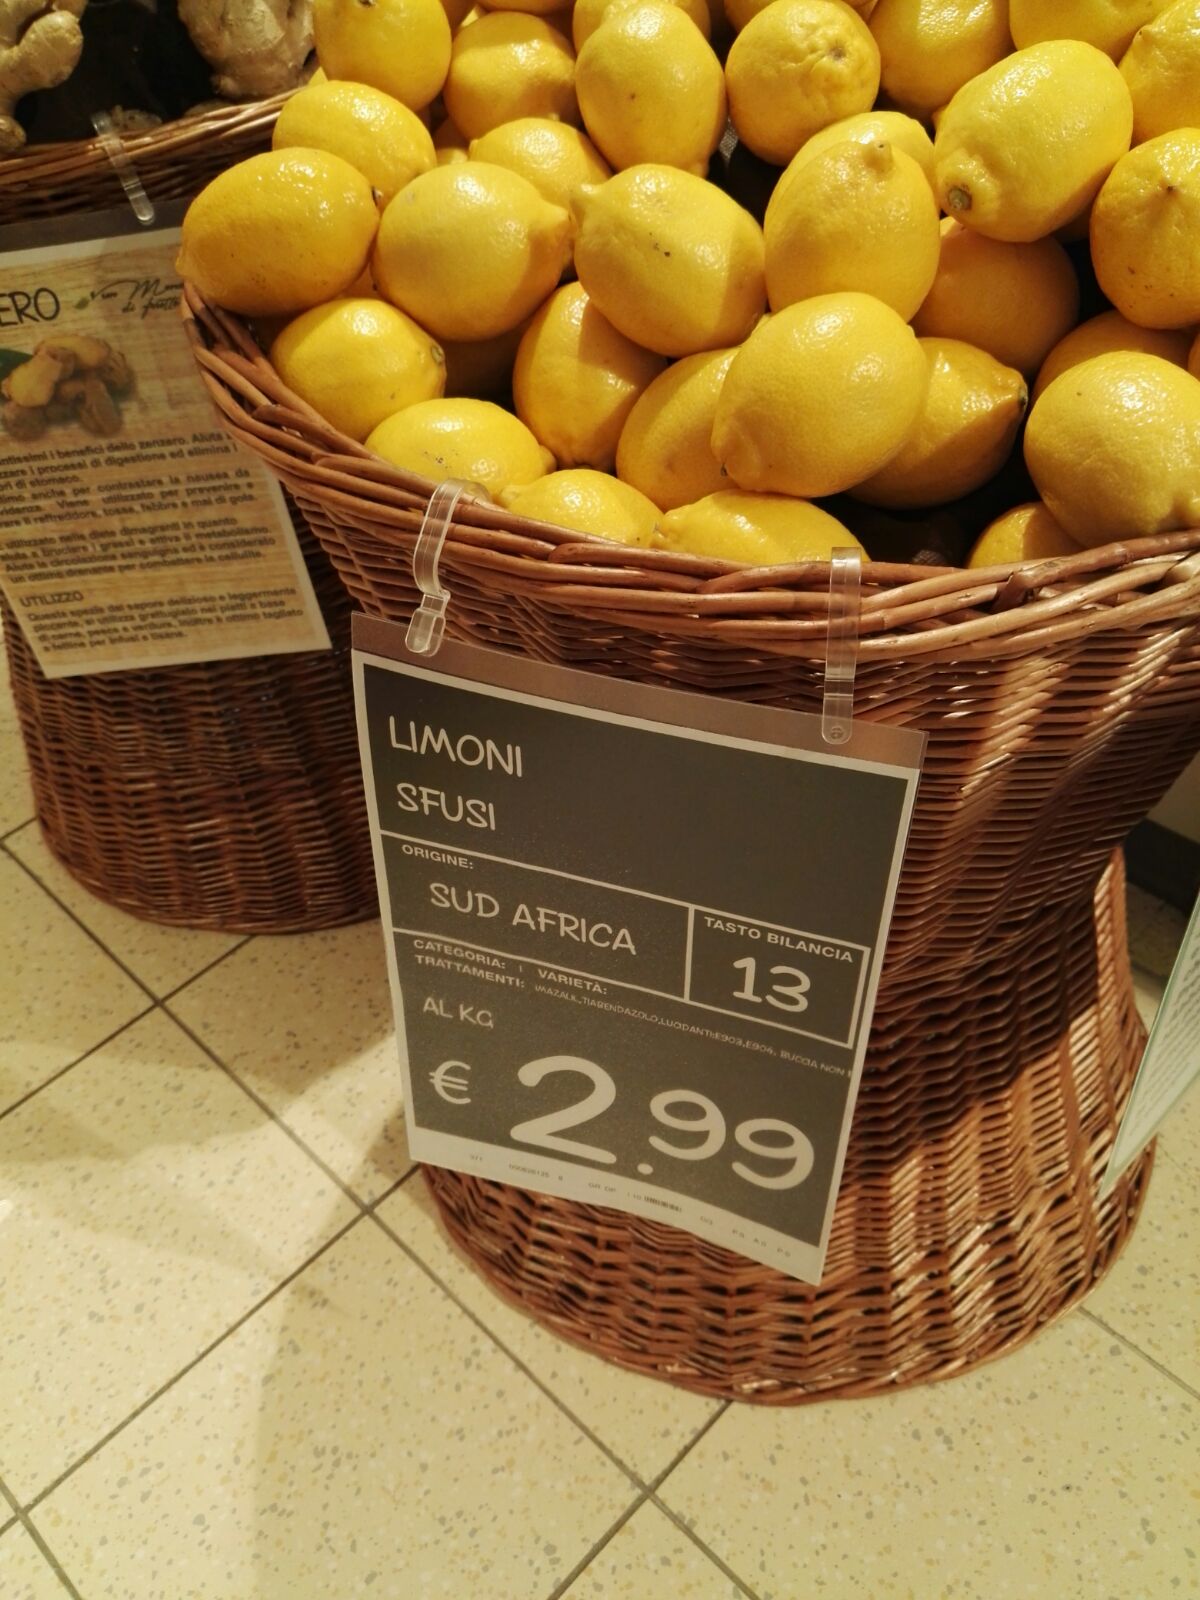 Limoni sfusi origine Sudafrica venduti in un supermercato di Palermo